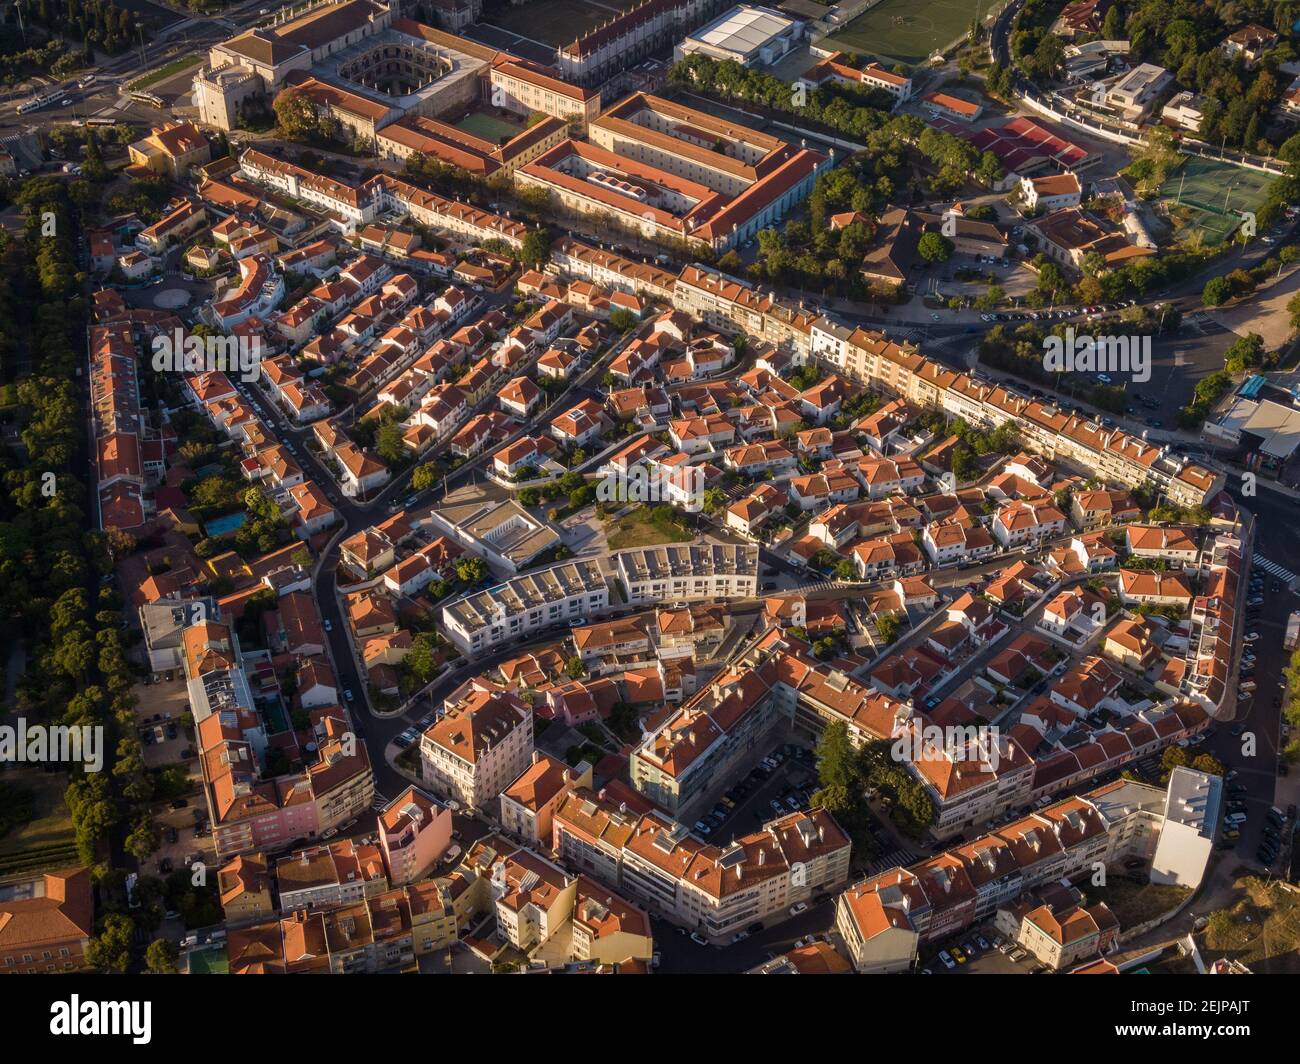 Vue aérienne du quartier résidentiel traditionnel au lever du soleil dans le quartier Belem de Lisbonne, Portugal. Banque D'Images